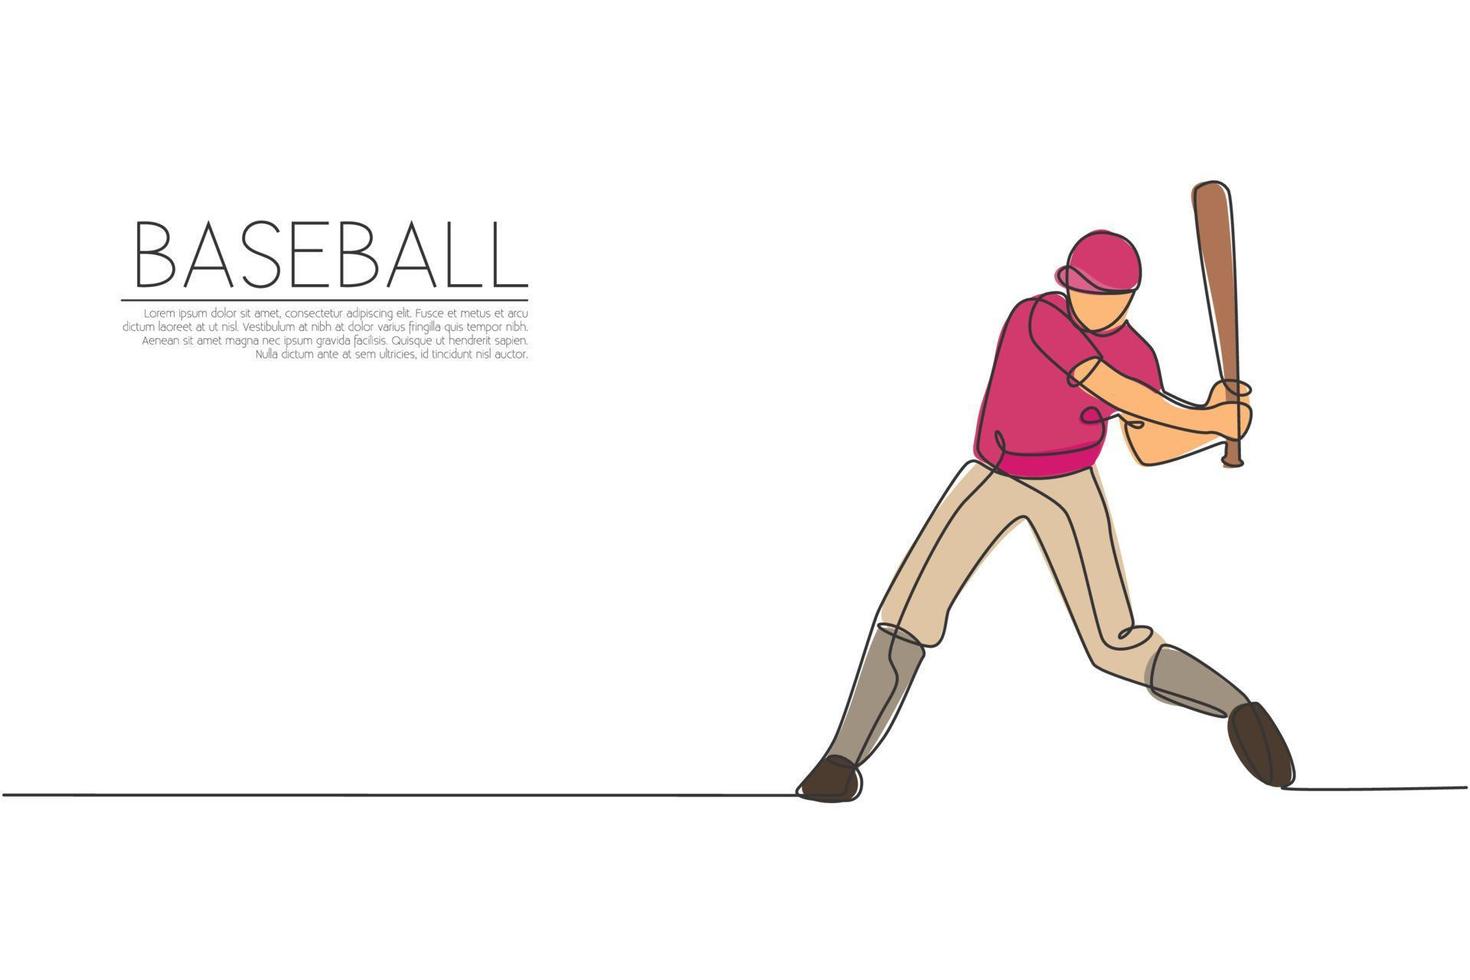 enda kontinuerlig linjeritning av ung smidig man baseballspelare praxis att slå bollen. sport träning koncept. trendiga en rad rita design grafisk vektorillustration för baseball marknadsföring media vektor